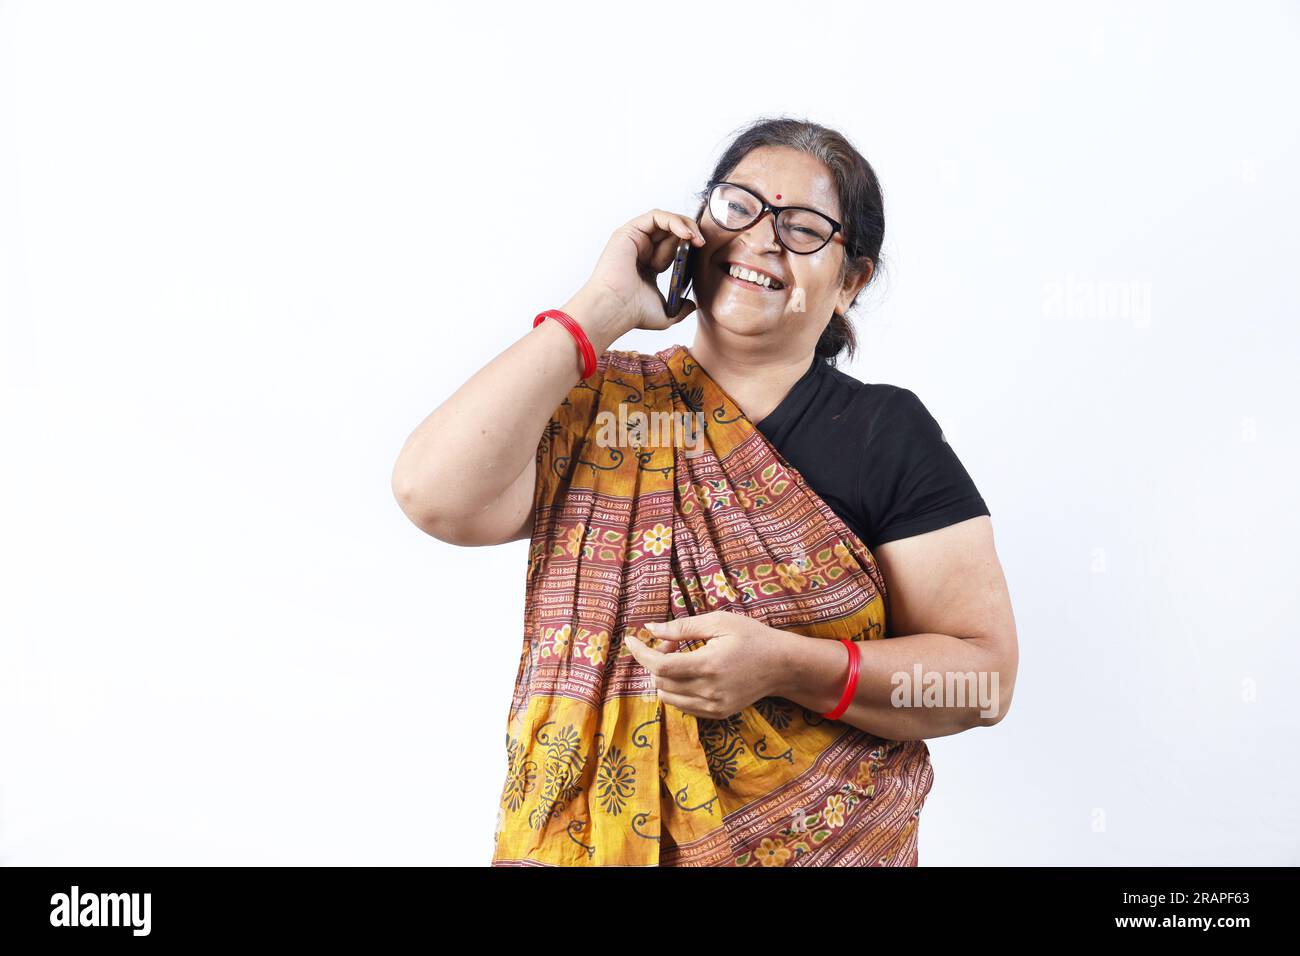 Ländliche indische alte Frau, die Saree trägt und verschiedene Ausdrücke am Telefon darstellt. Sie hat ein Handy in der Hand. GoDigital-Konzept im ländlichen Indien. Stockfoto